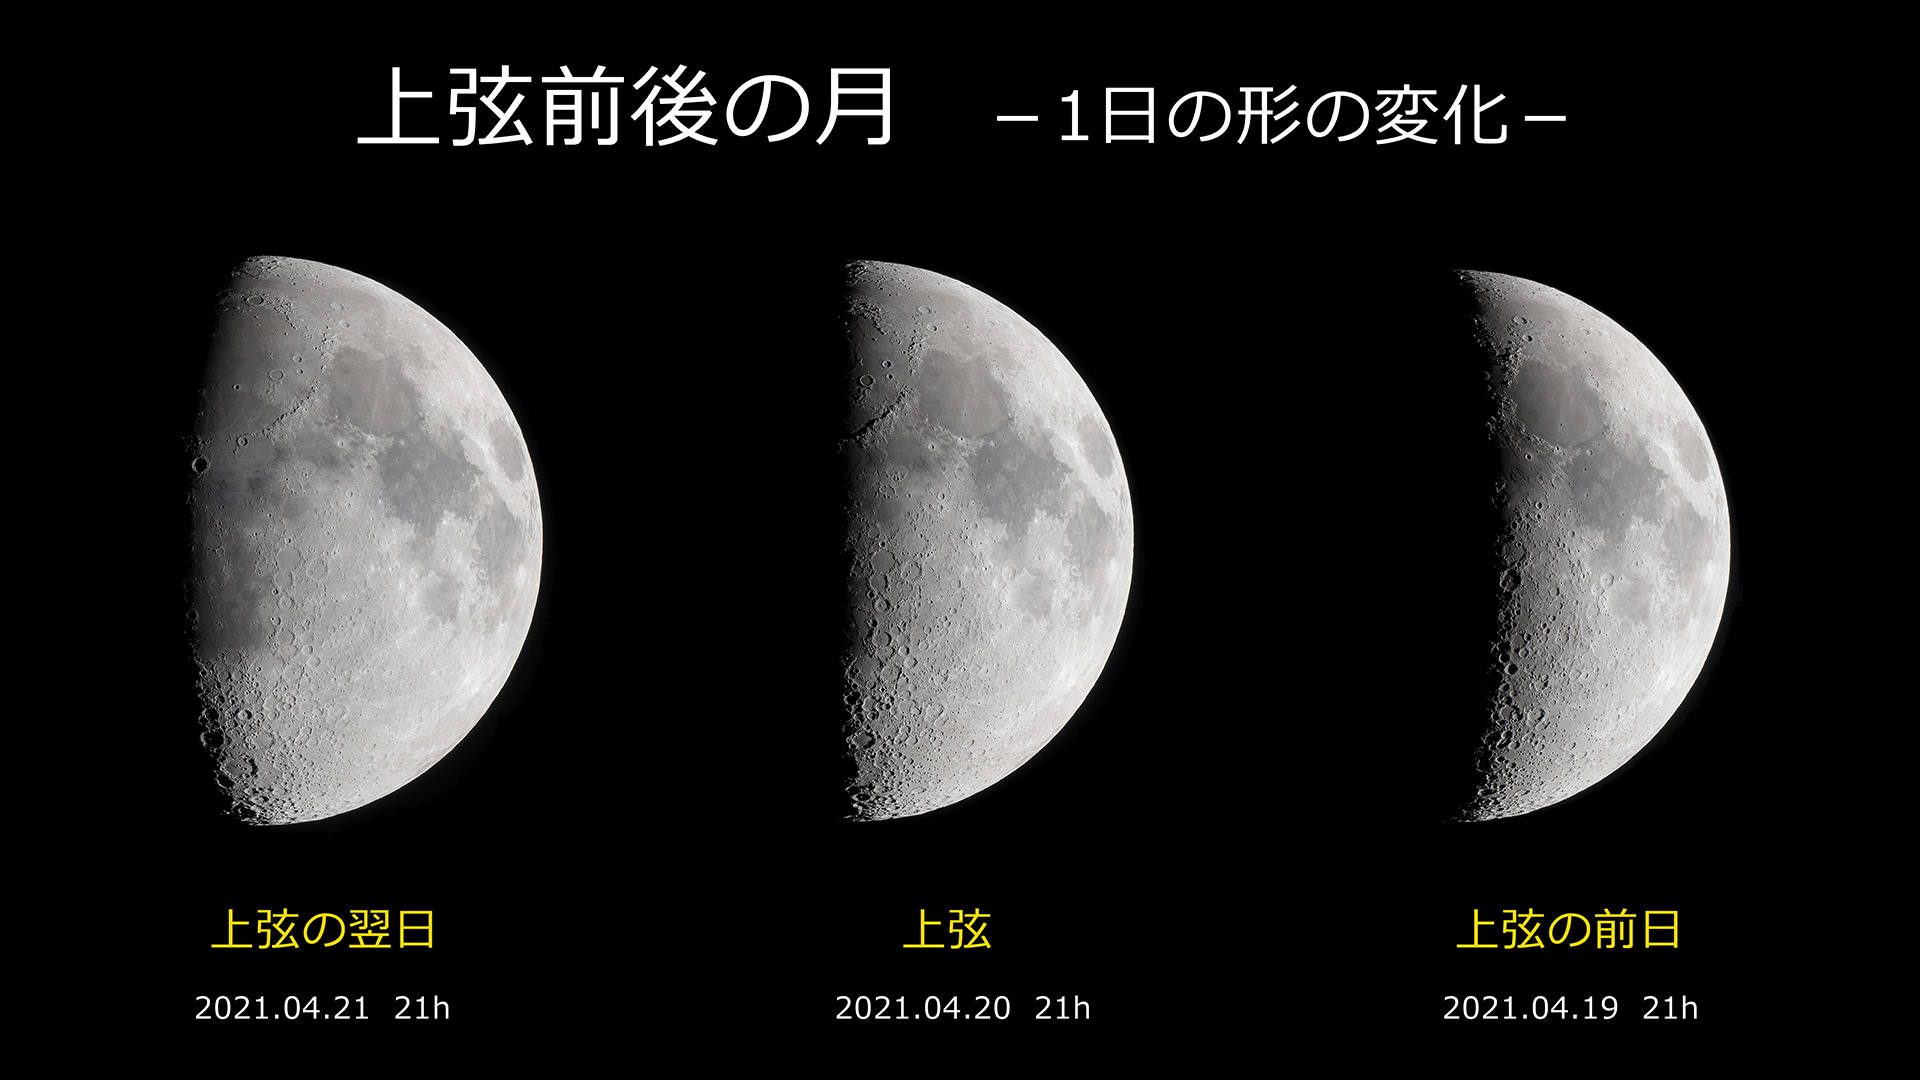 上弦 下弦の月の撮影 月と星空の探訪